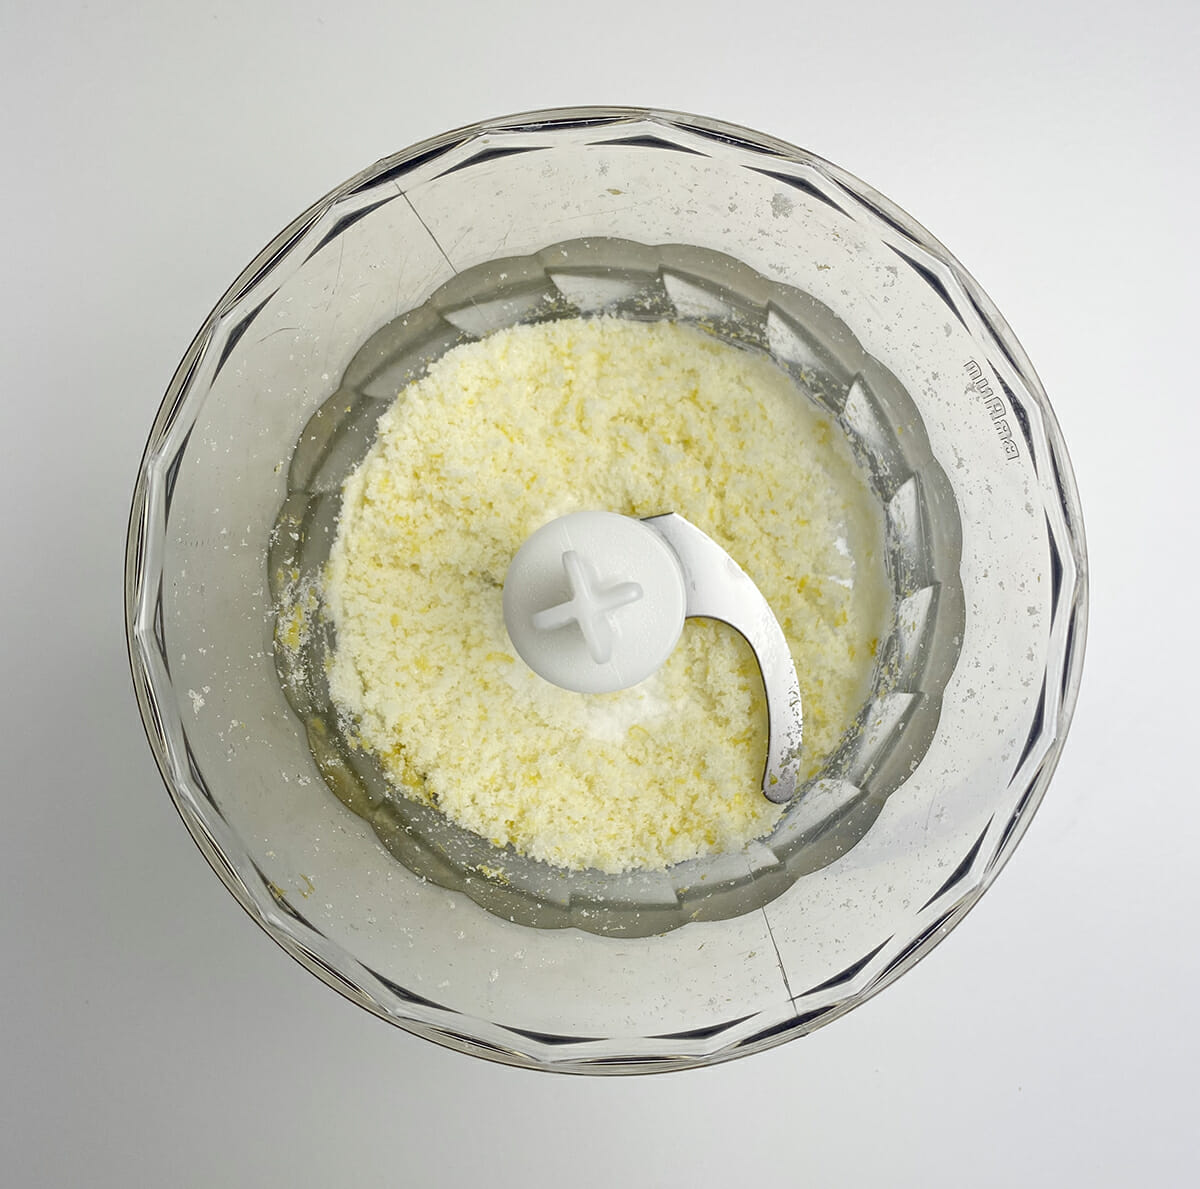 lemon sugar in food processor